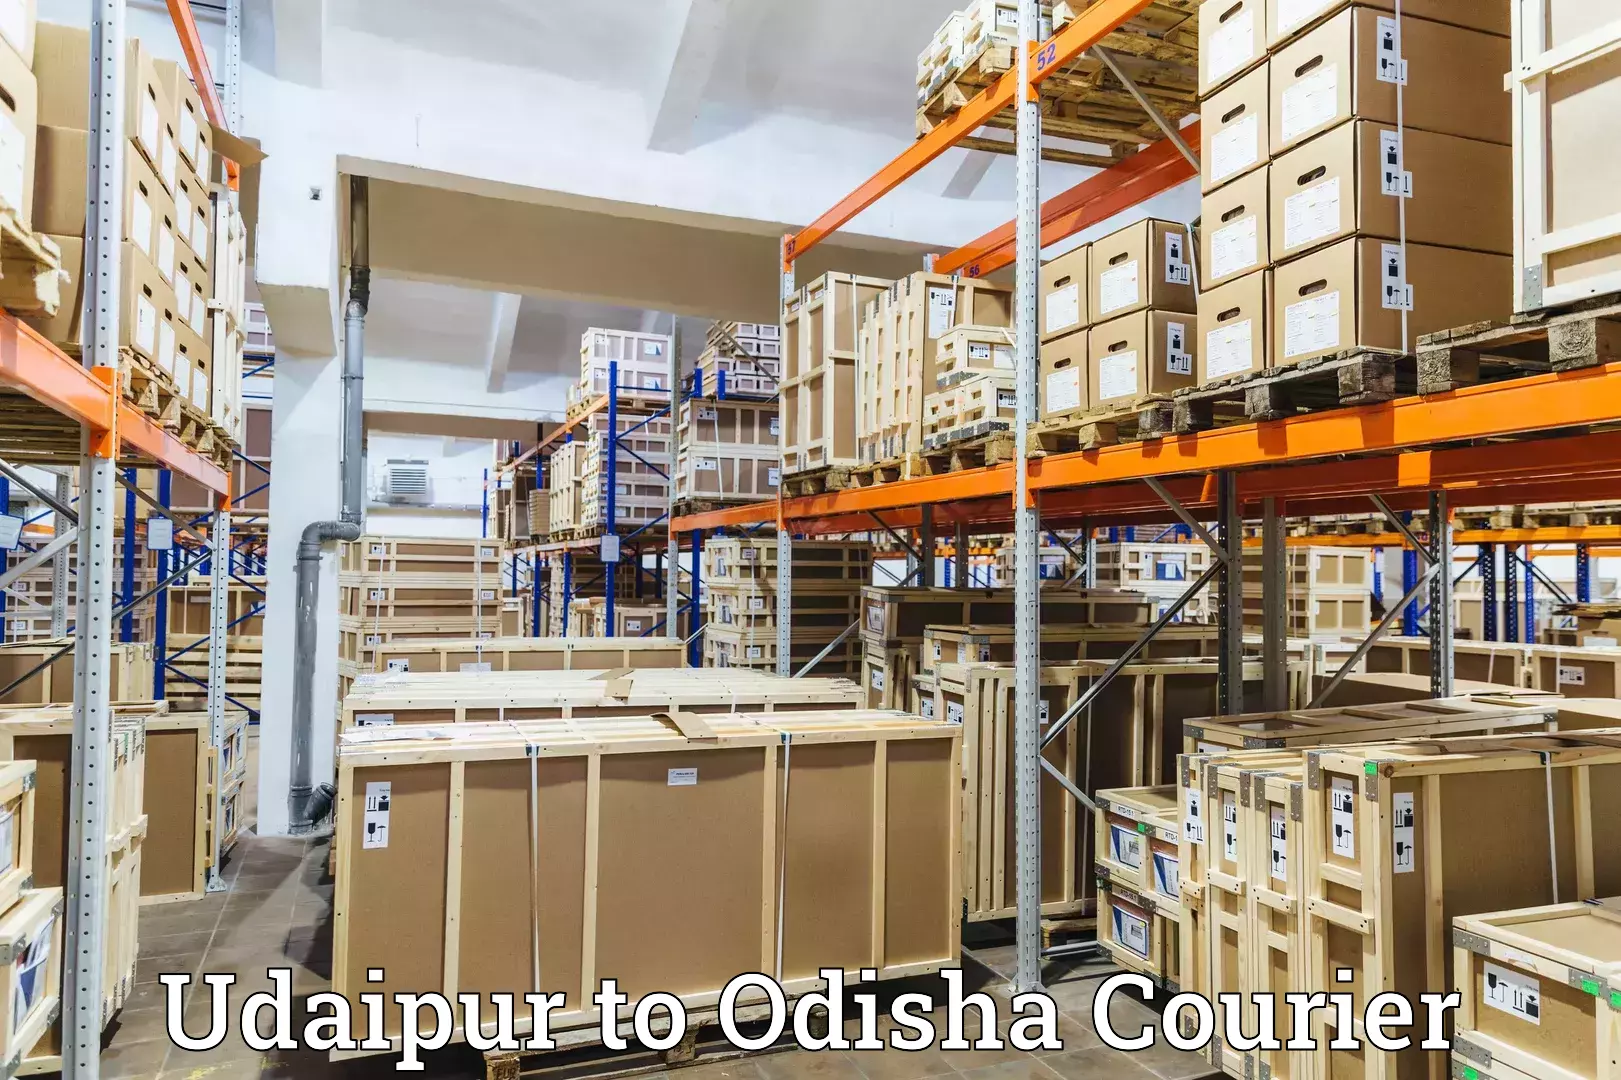 Customer-centric shipping Udaipur to Odisha